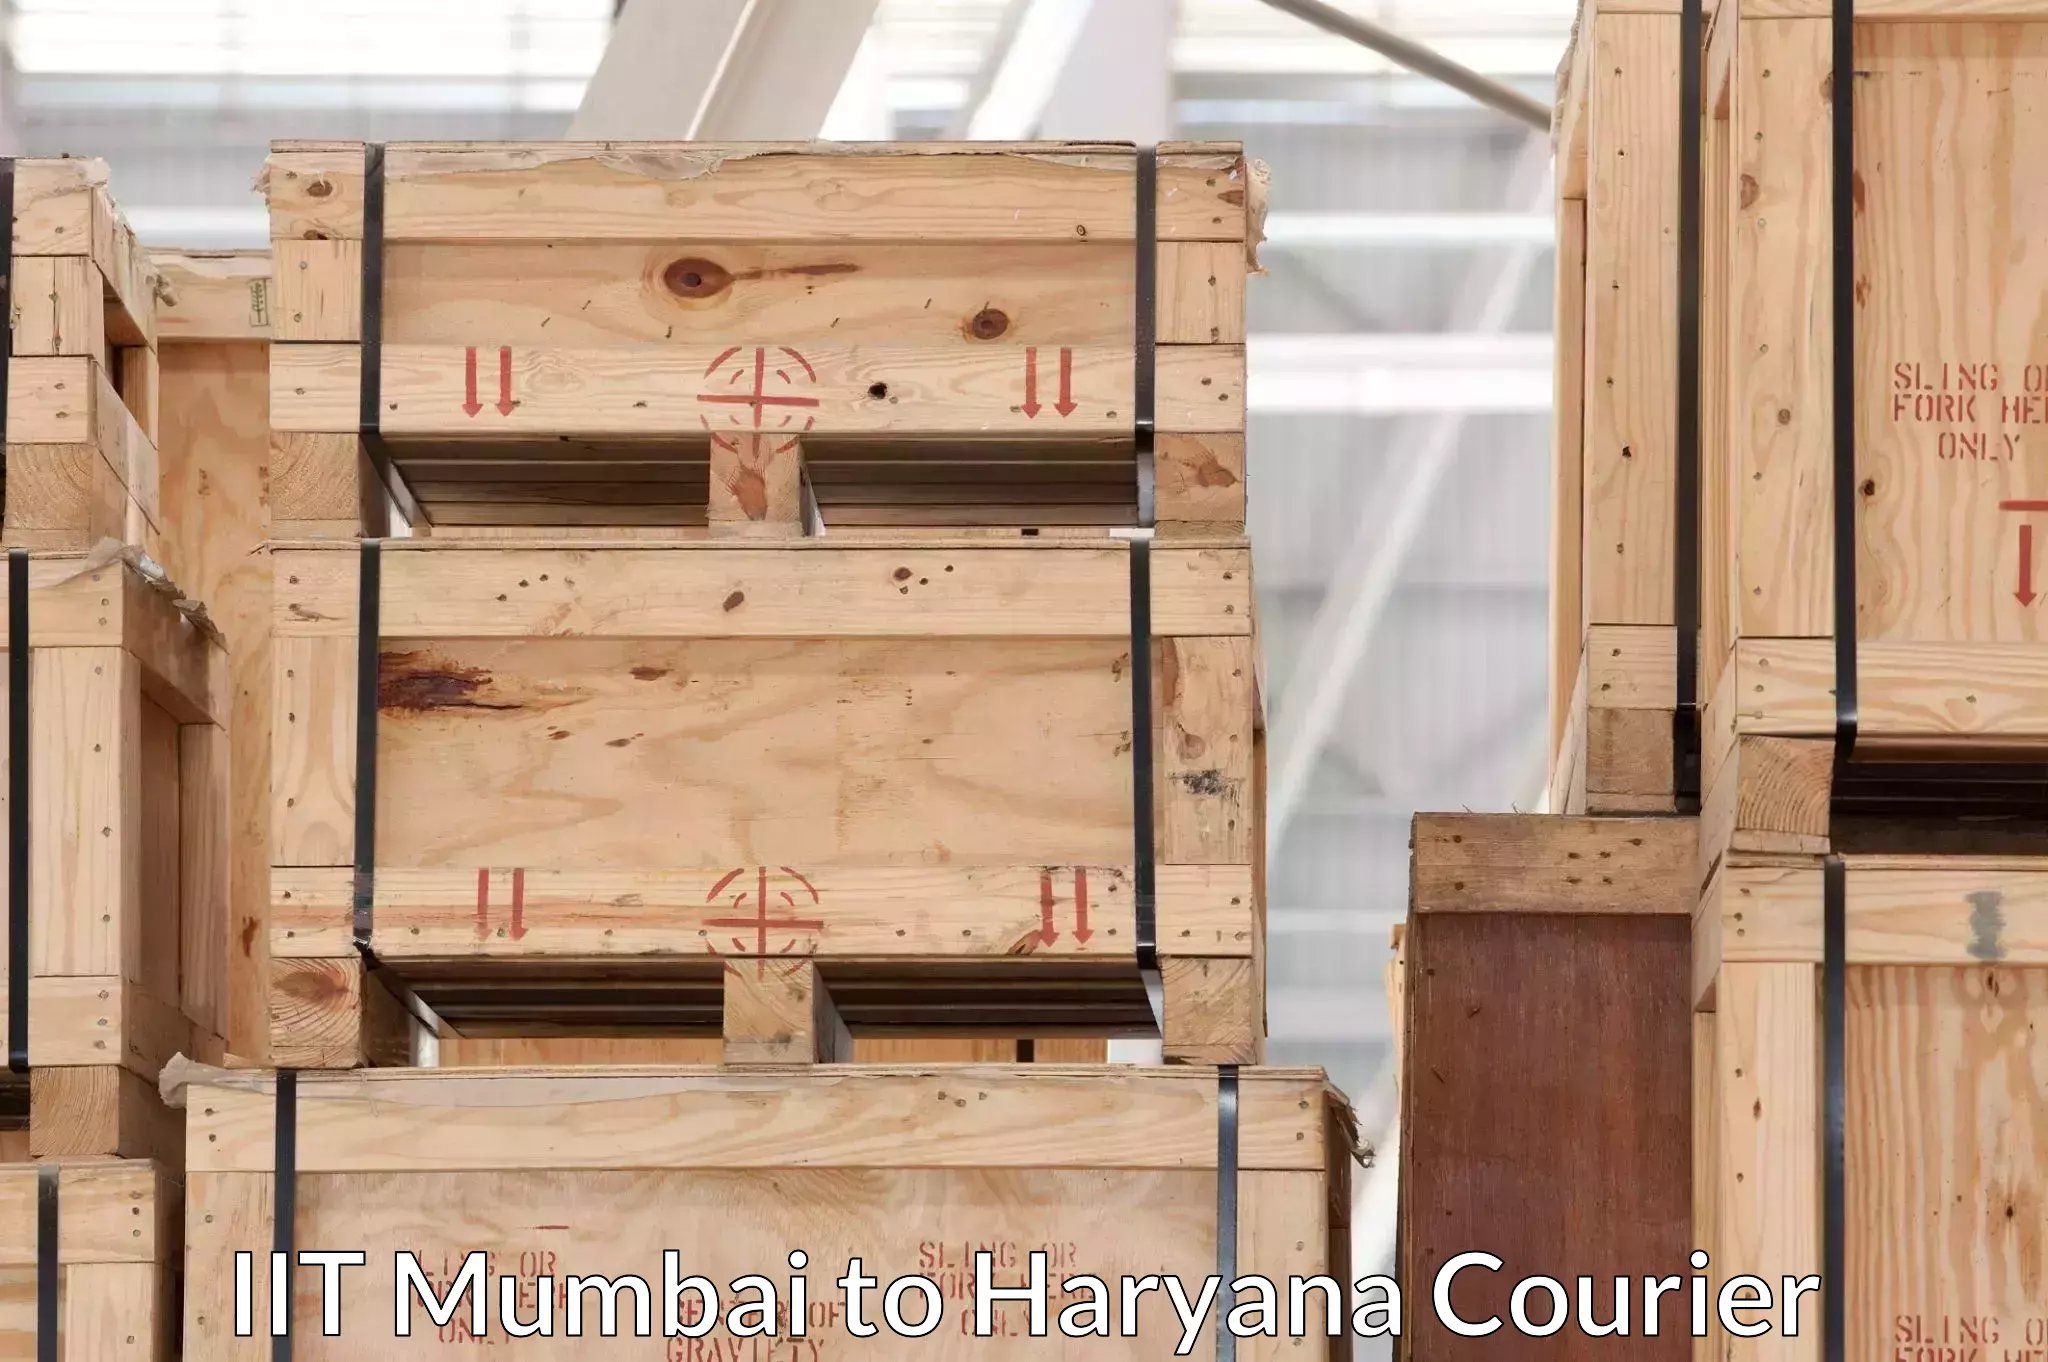 Quality moving and storage IIT Mumbai to NCR Haryana